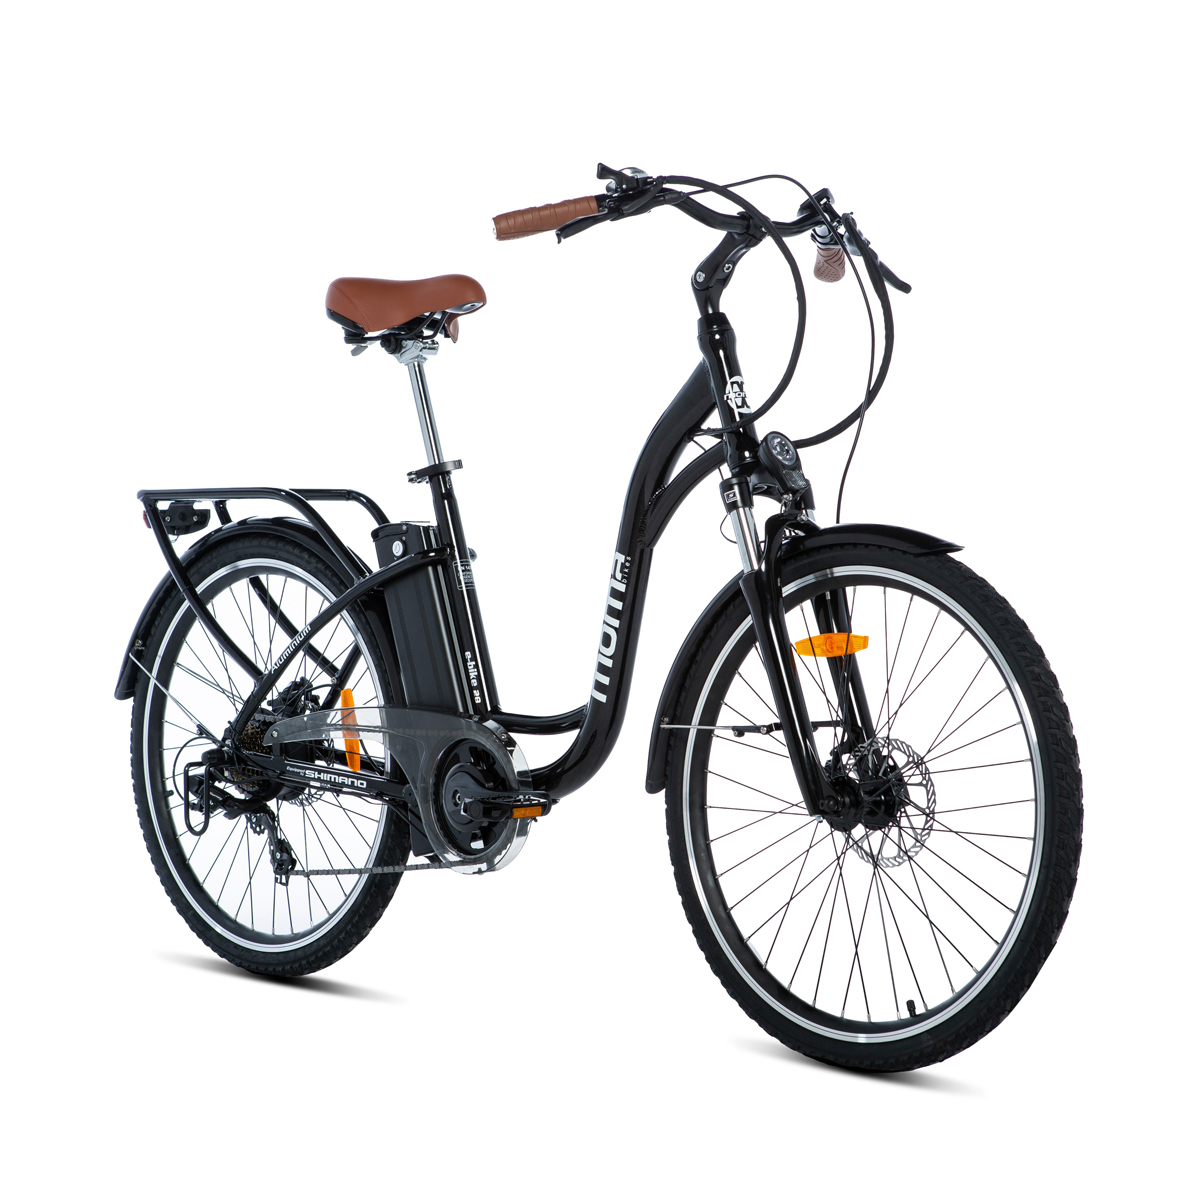 Moma Bikes Bicicleta electrica aluminio shimano 7v frenos de disco batería litio 36v 16ah urbana ebike28.2 doble hidraulicos ion 7vfrenos